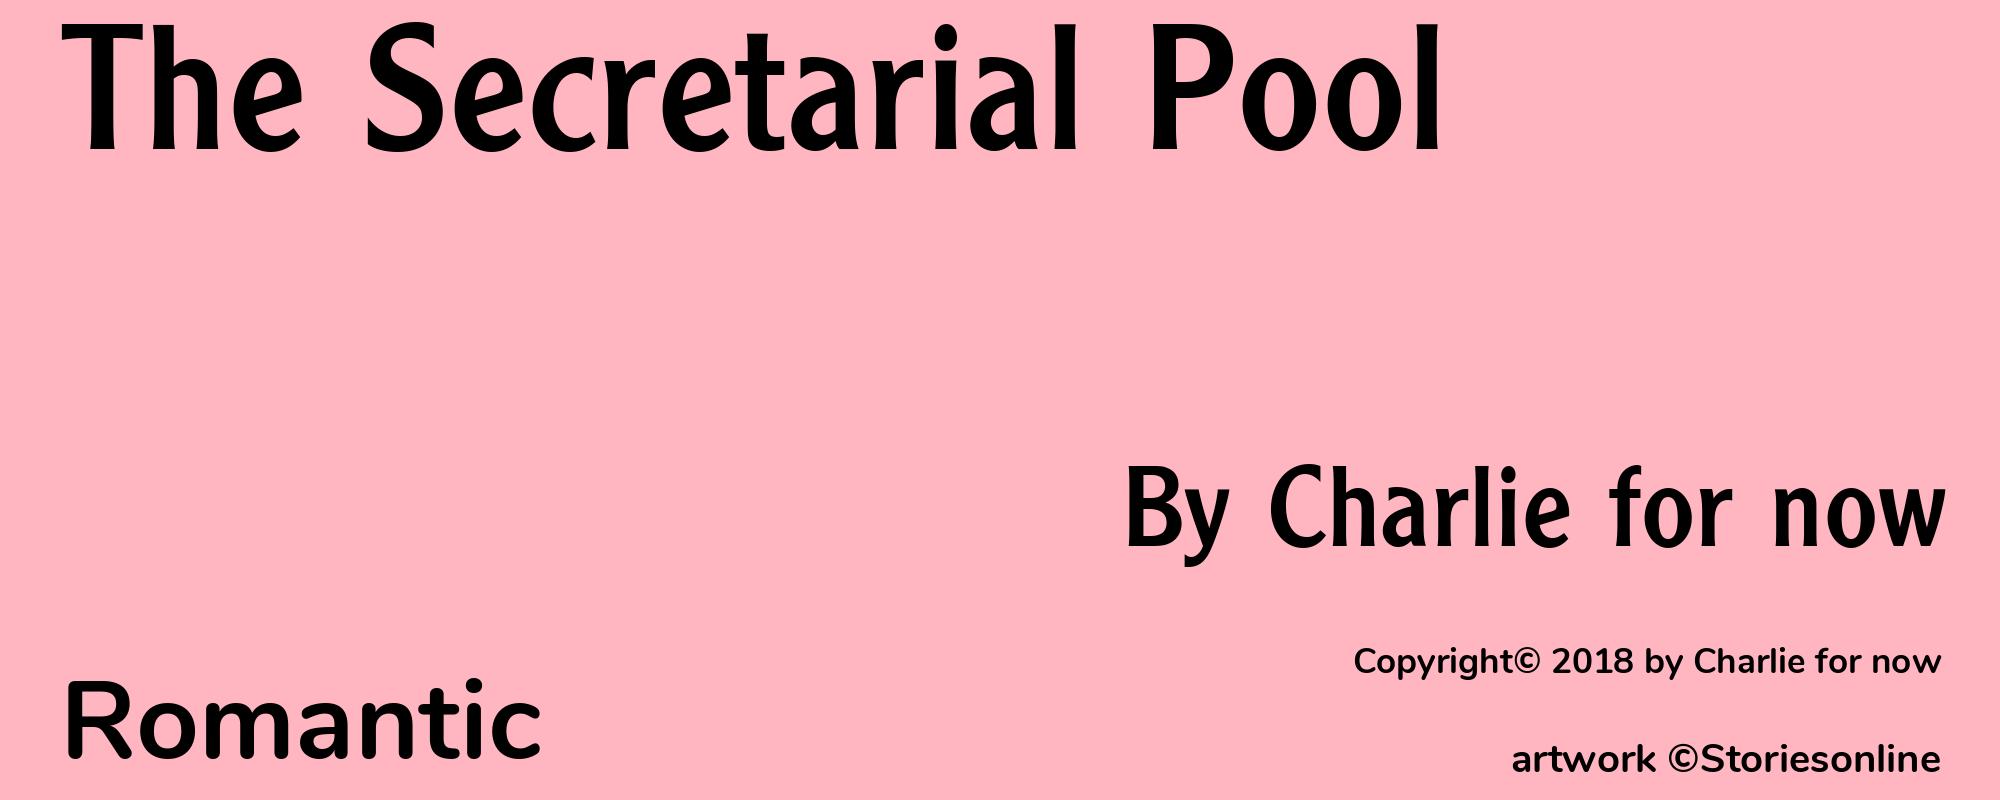 The Secretarial Pool - Cover